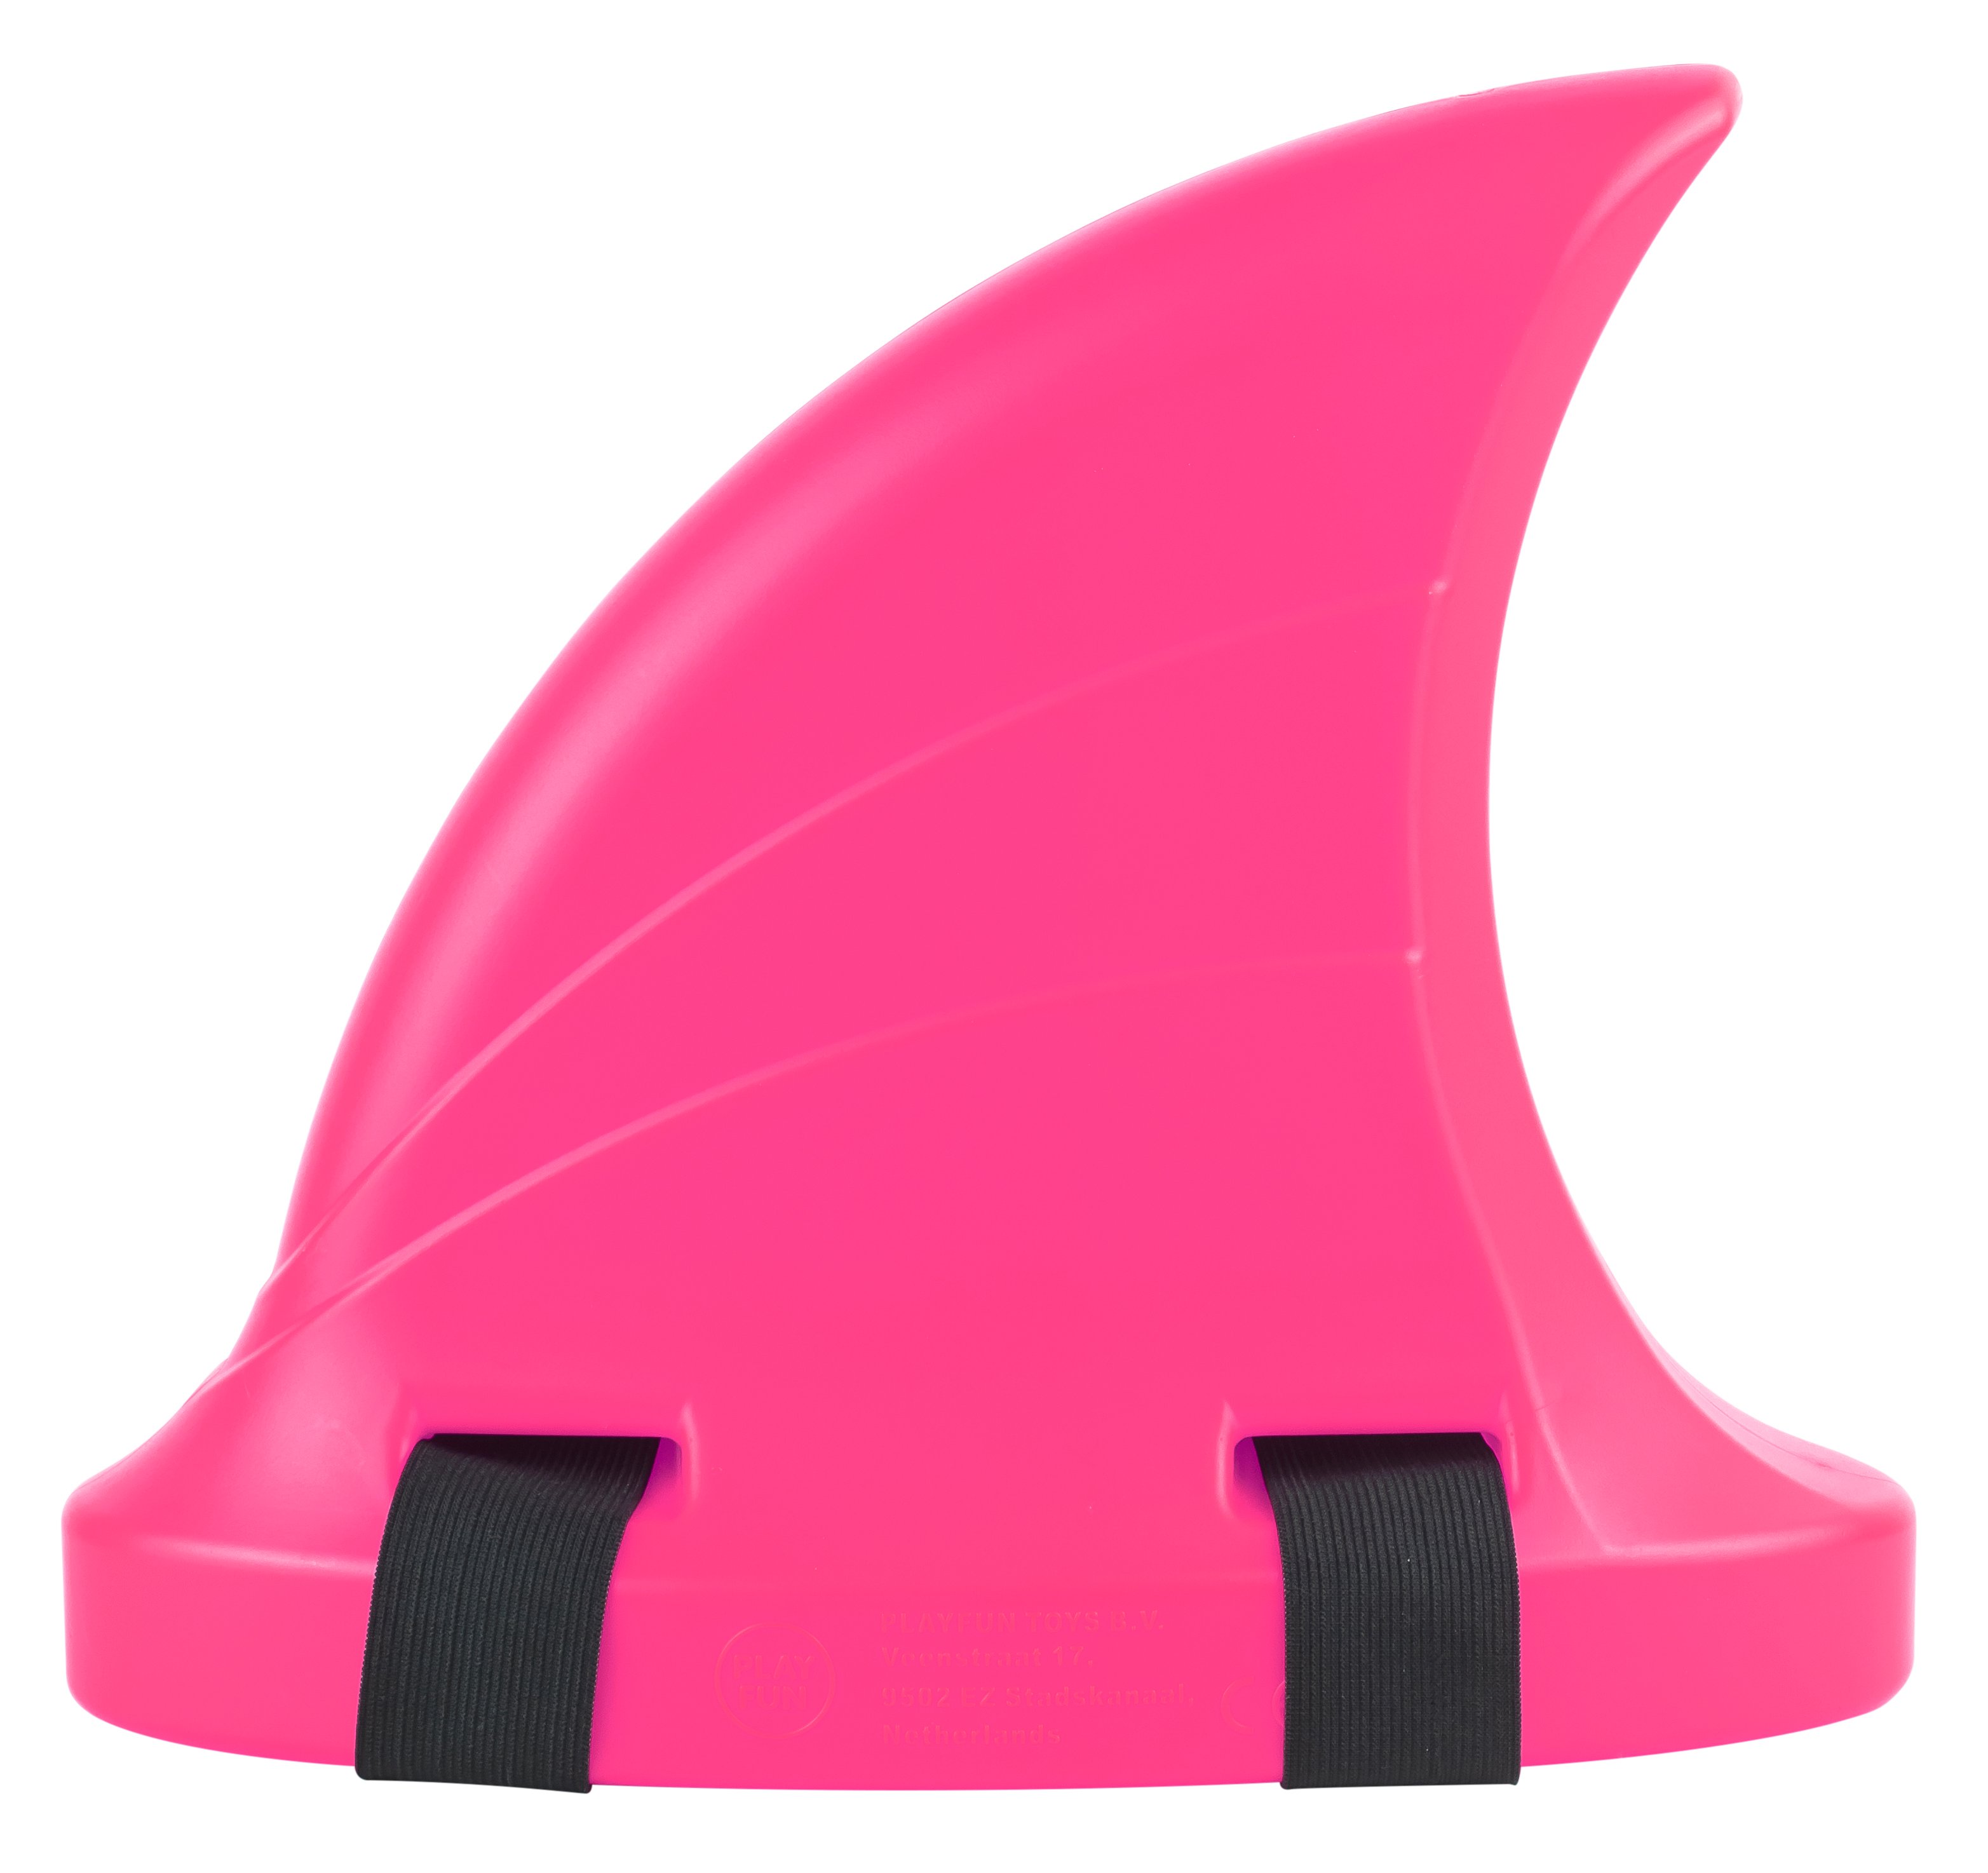 Playfun - Shark Fin - Pink (9701)